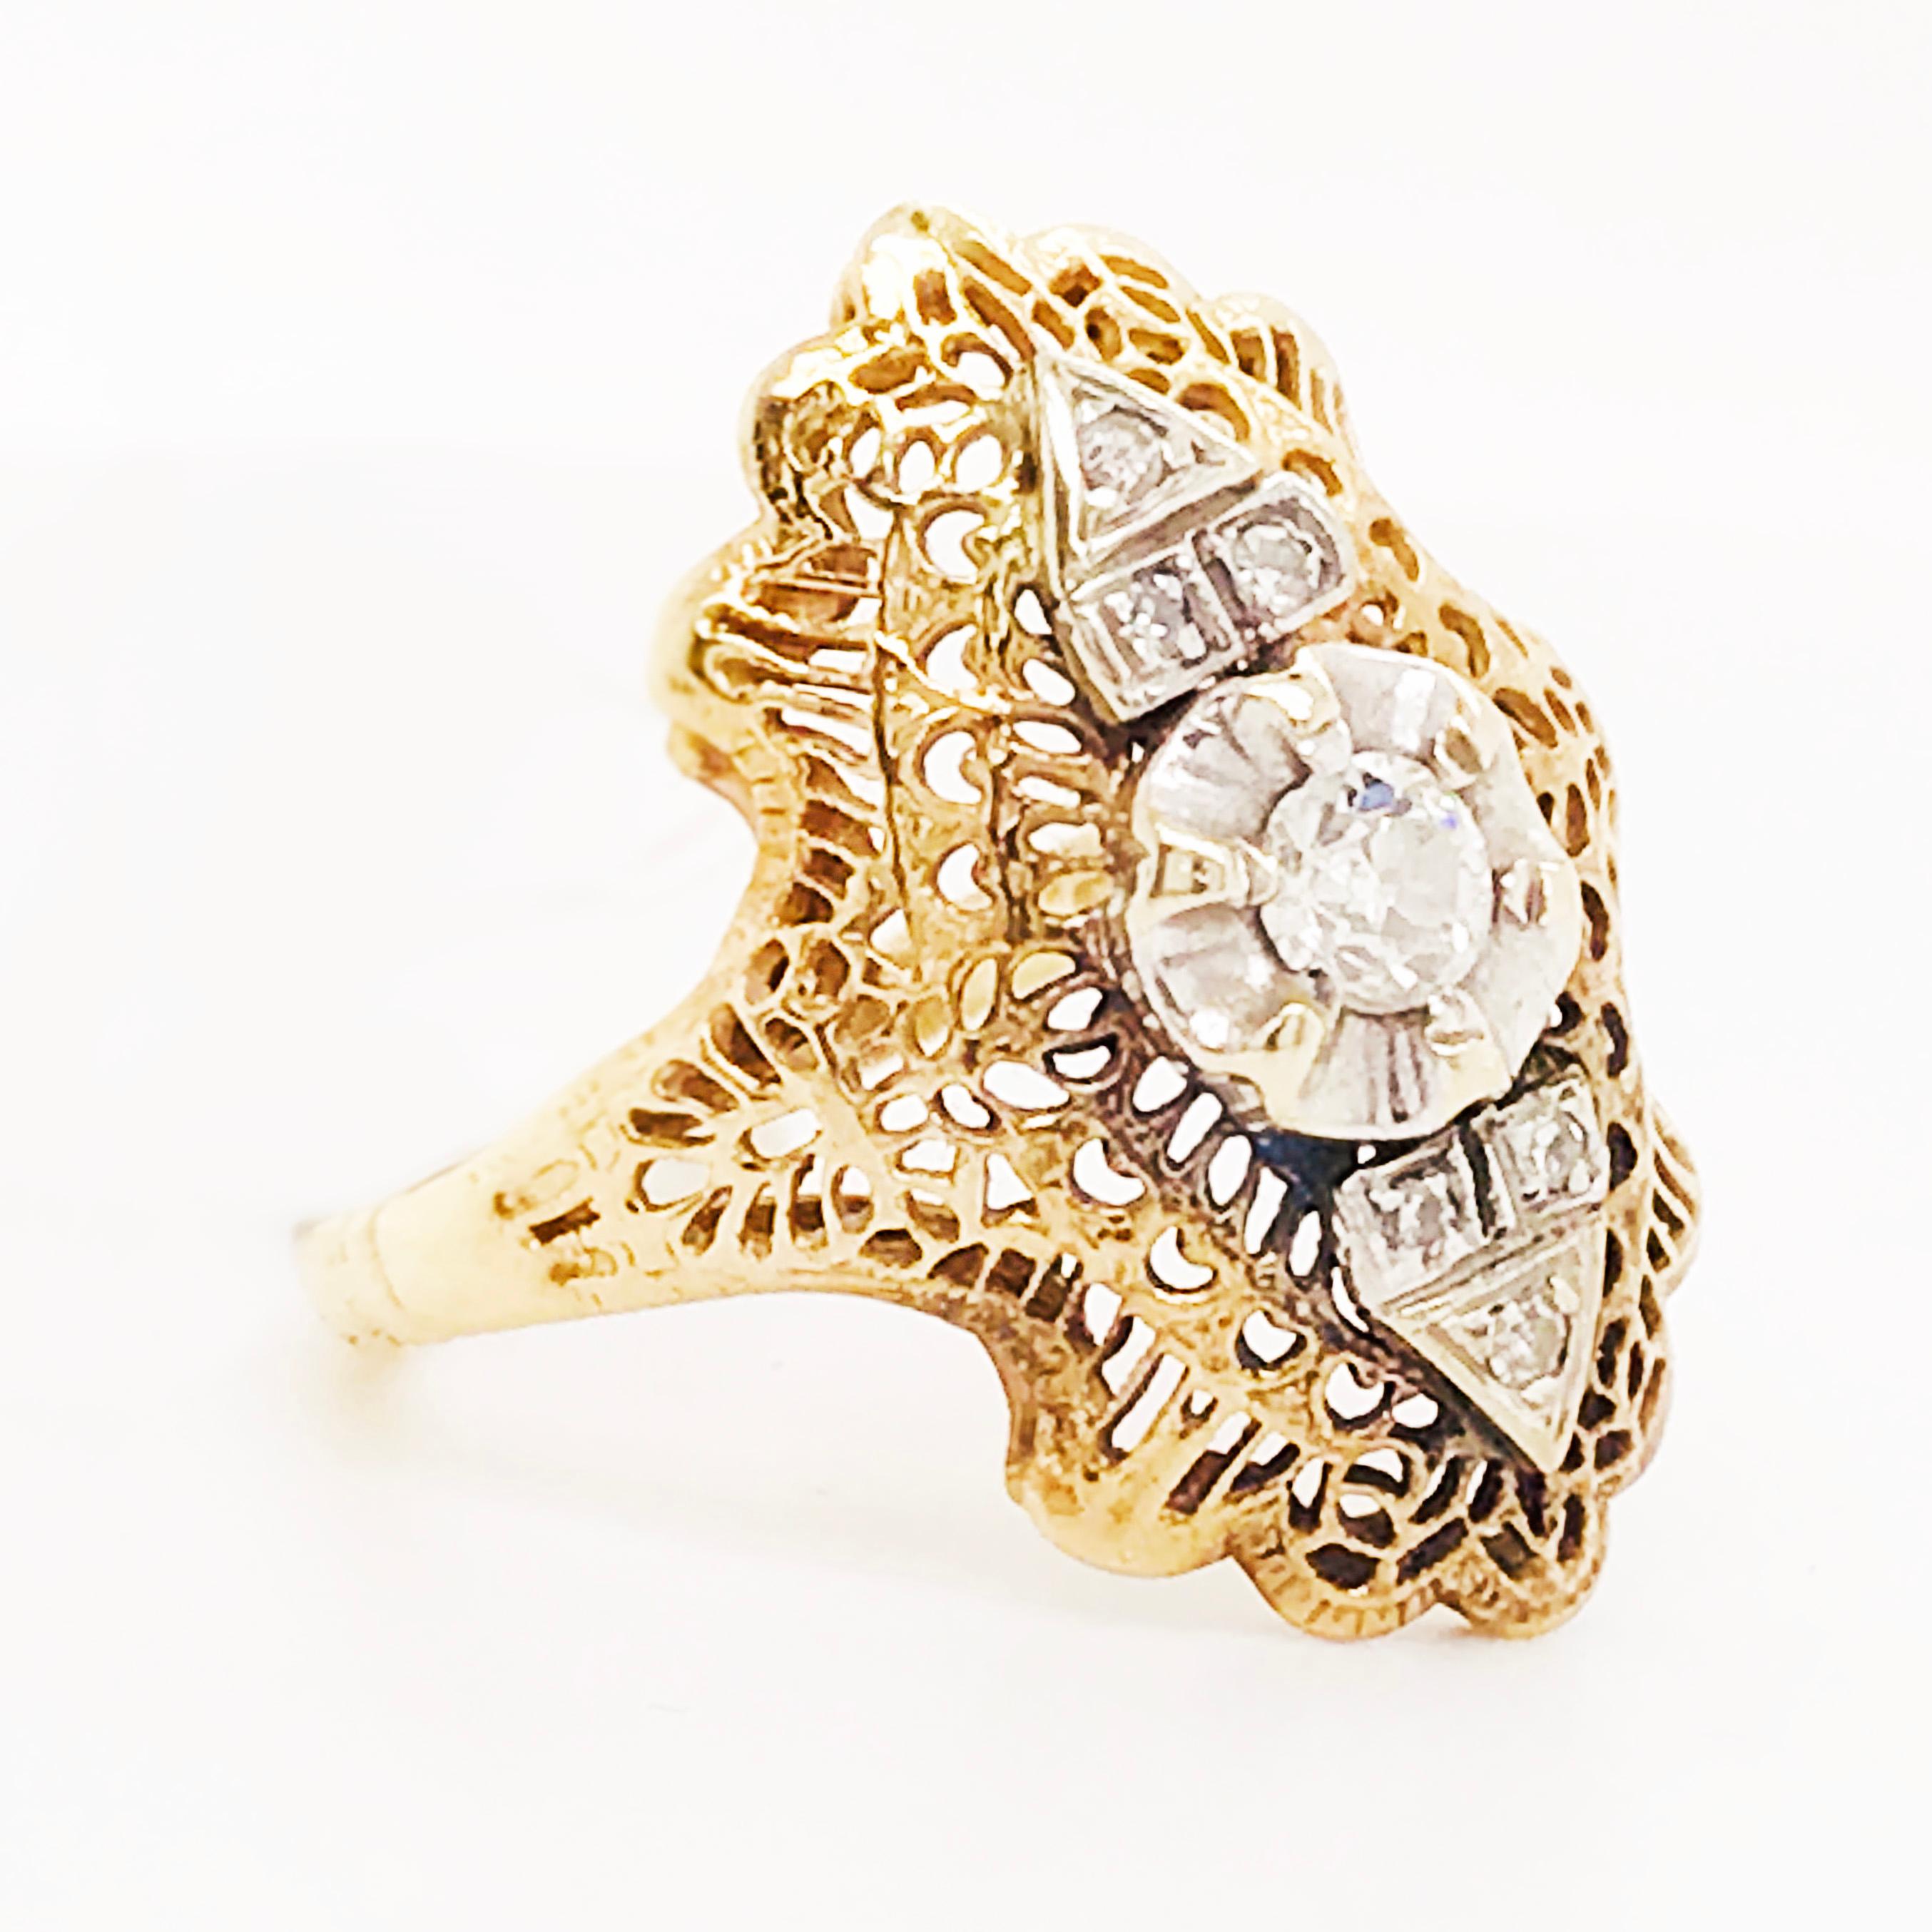 Women's Diamond Filigree Estate Ring 14 Karat Yellow Gold 0.21 Carat Diamond Ring